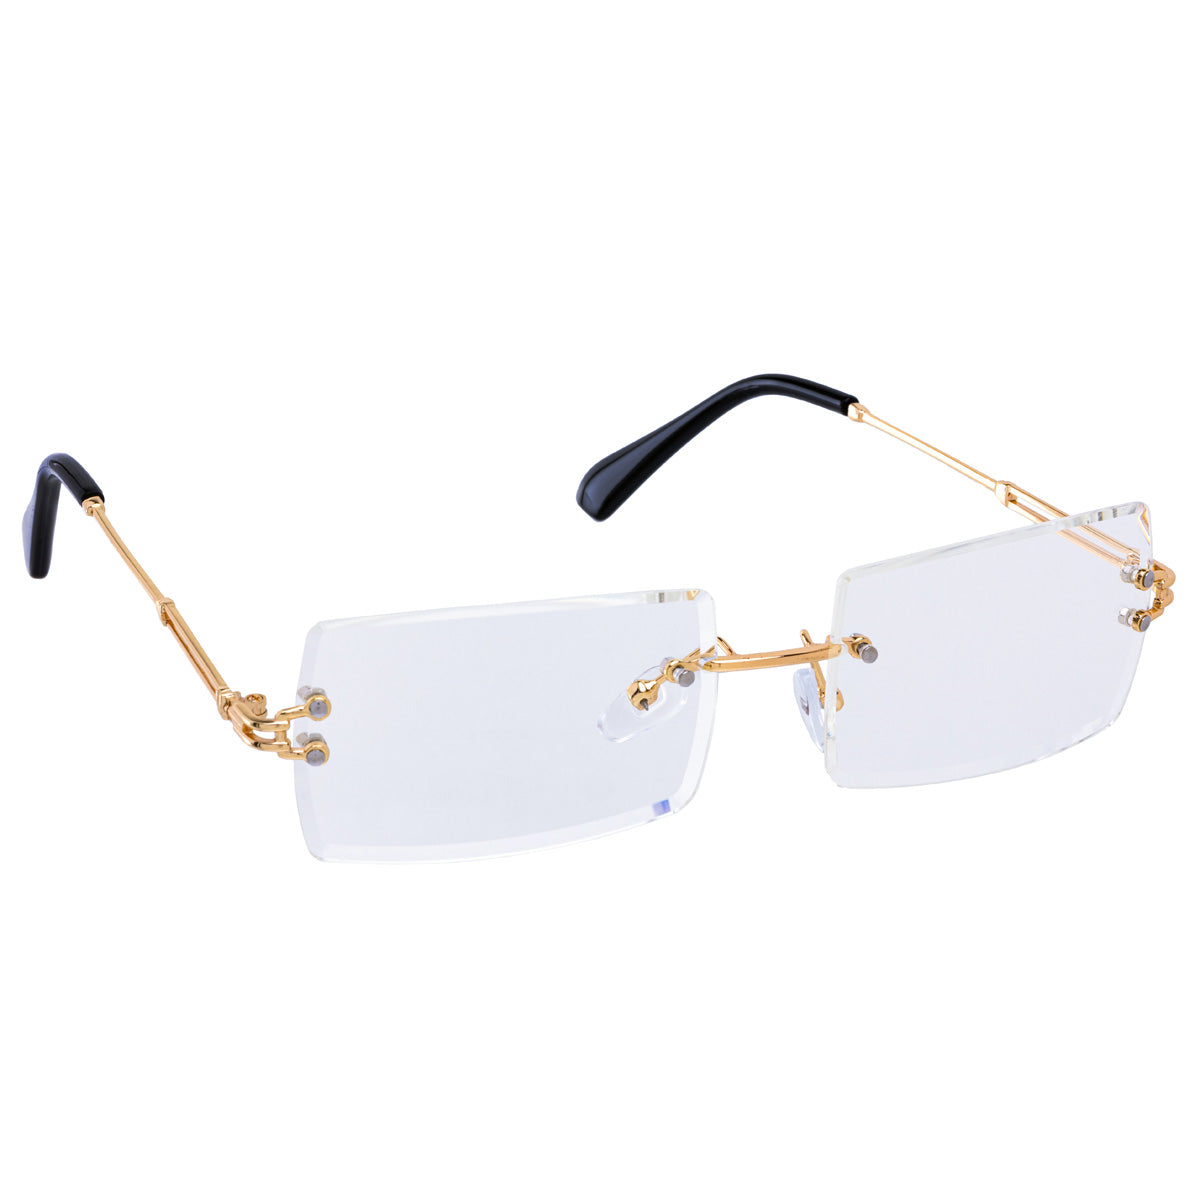 Frameless rectangular fake eyeglasses fake eyeglasses